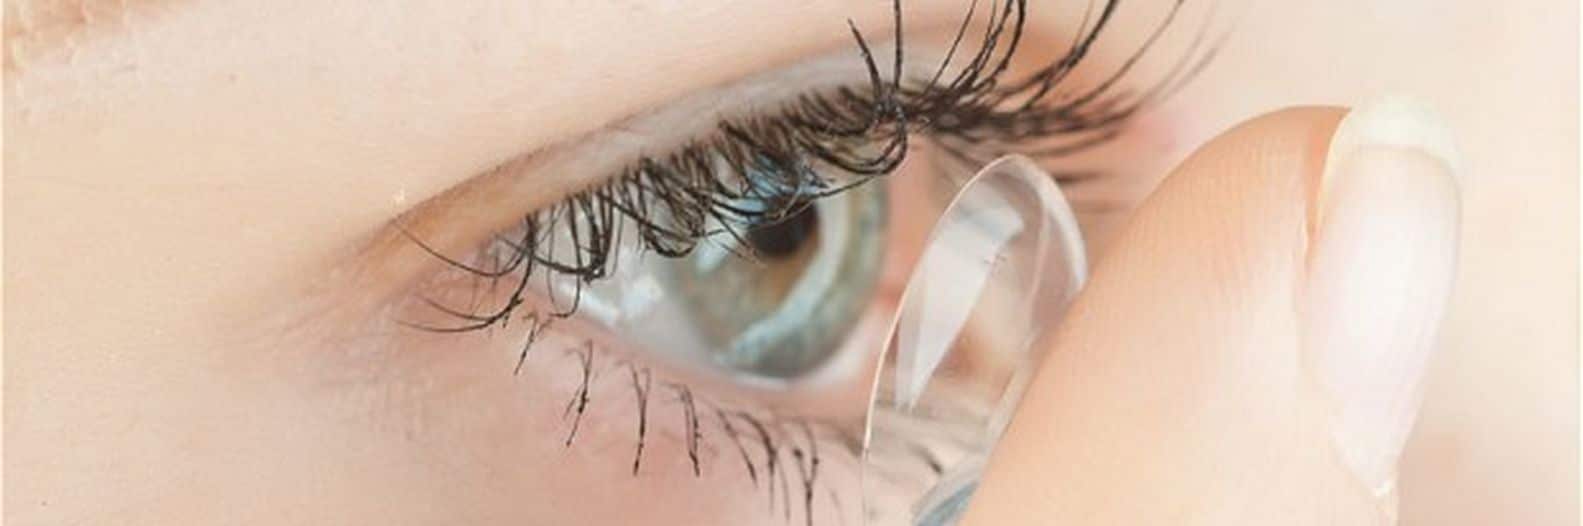 Adaptez des lentilles de contact correctrices